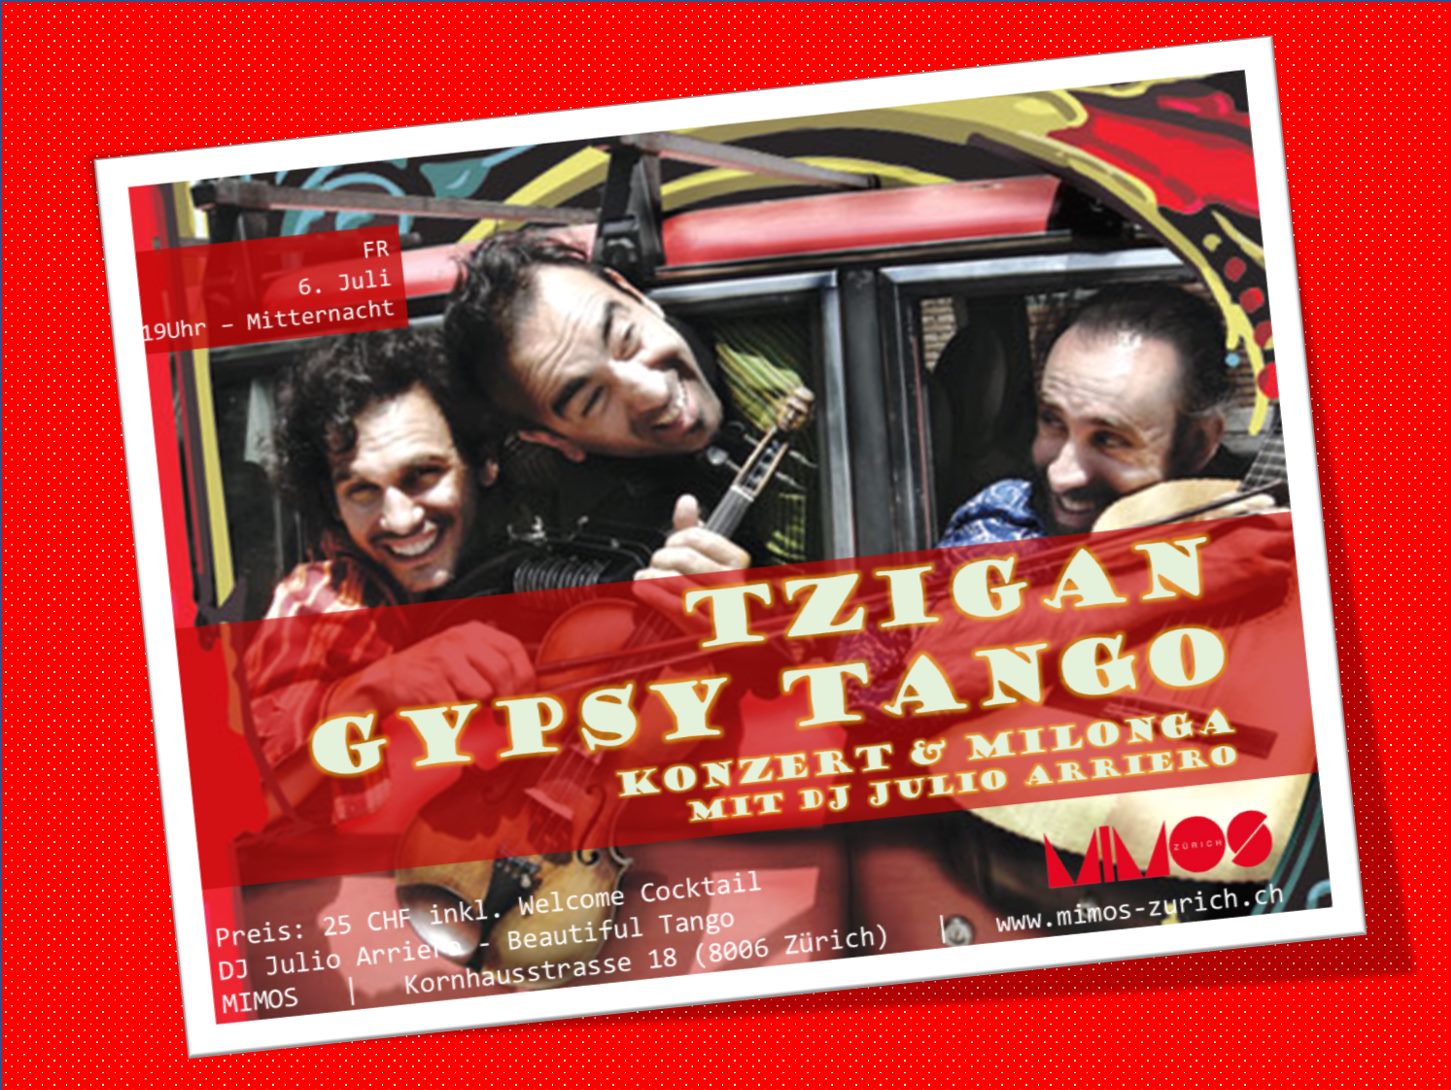 TZigan Gypsy-Tango aus Argentinien 